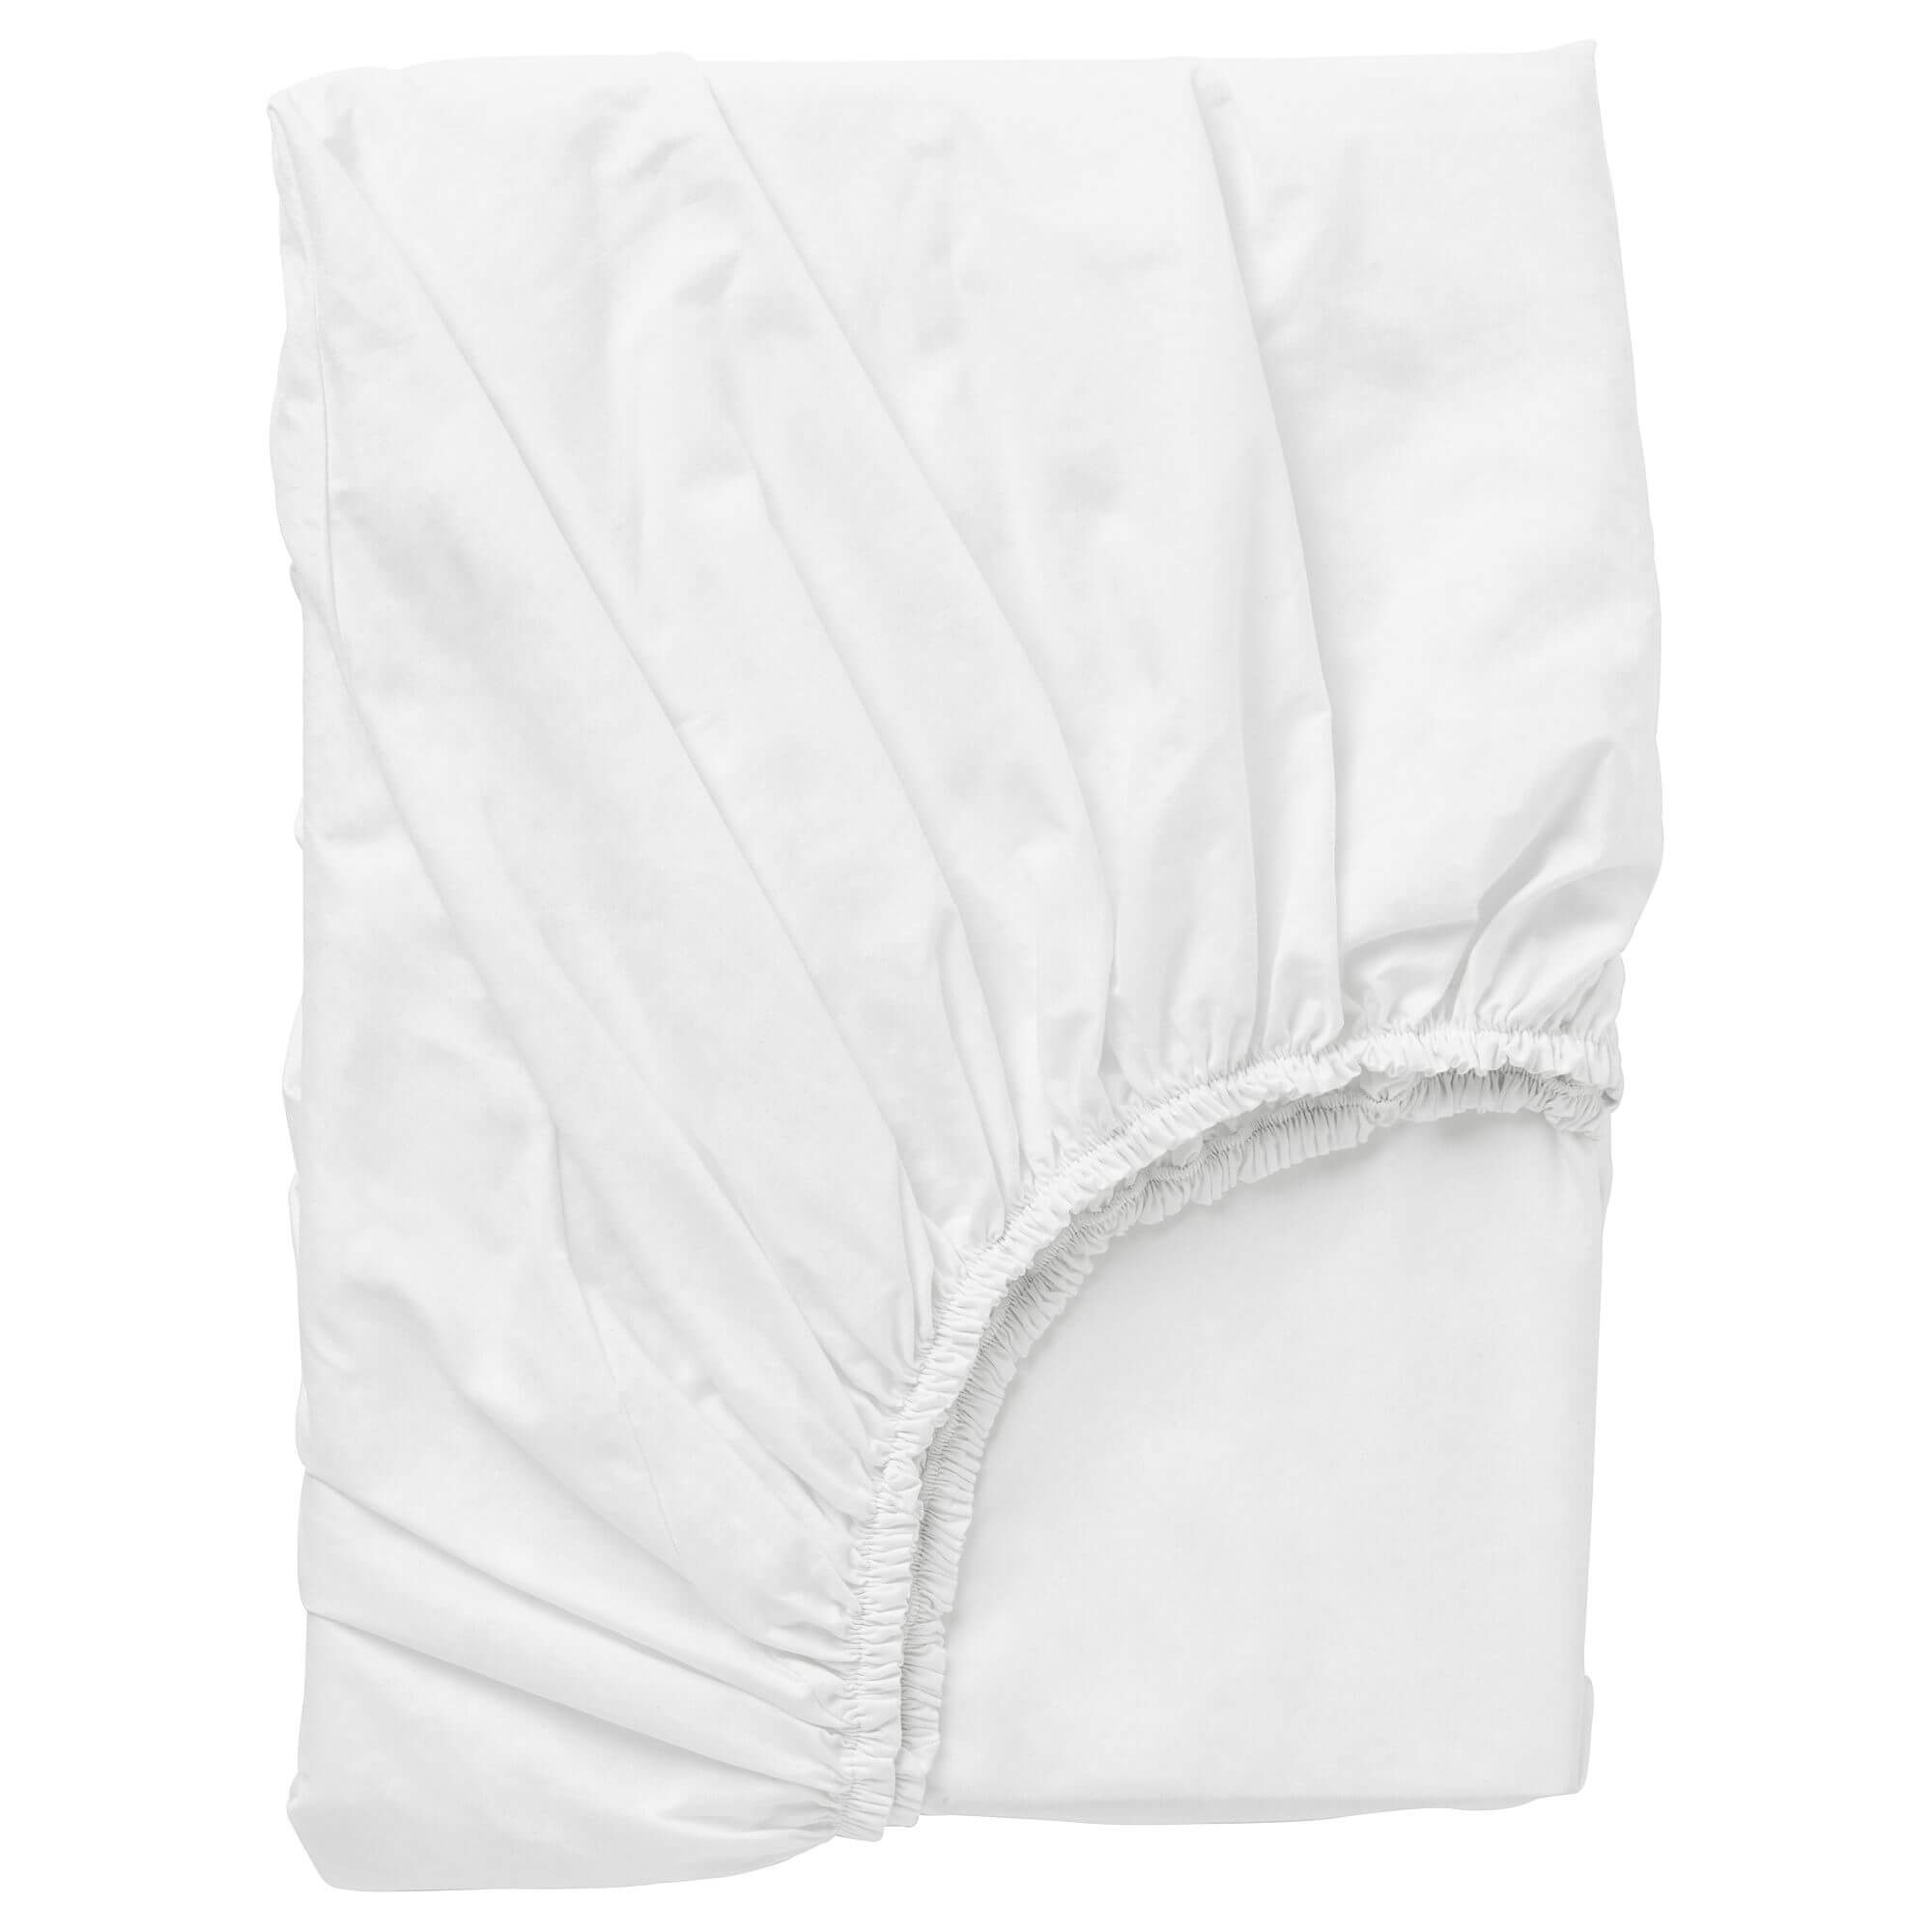 Простыня Ikea Dvala Fitted, 160х200, белый защитная натяжная простыня для матраса из махровой ткани с завитым ворсом на полиуретане 60 x 120 см белый